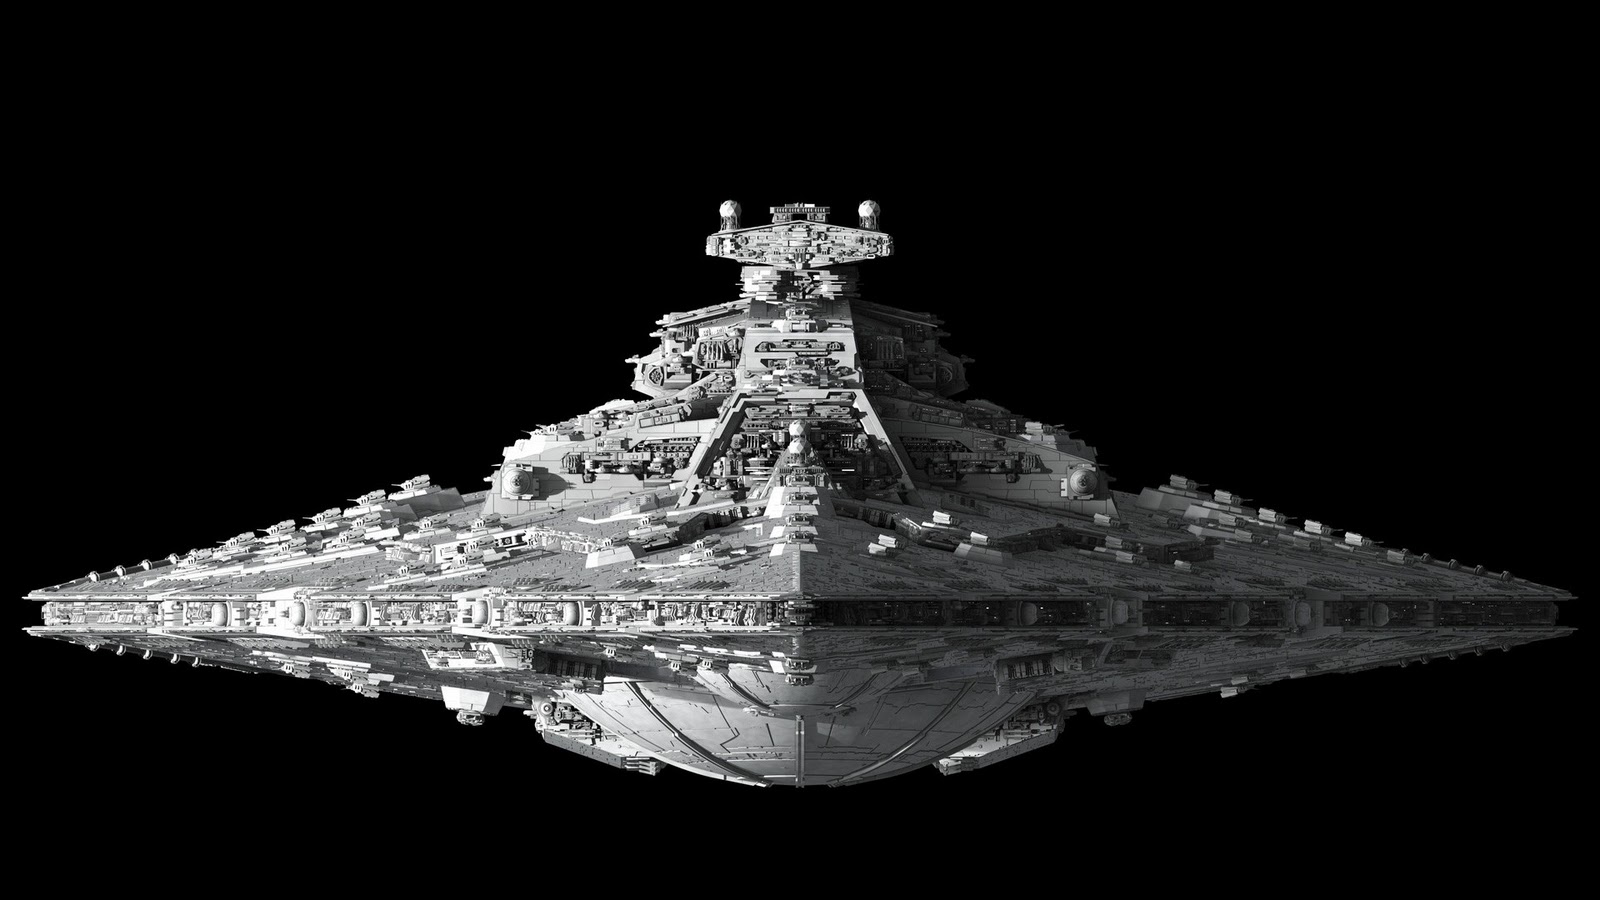 Star Wars Ships Destroyer